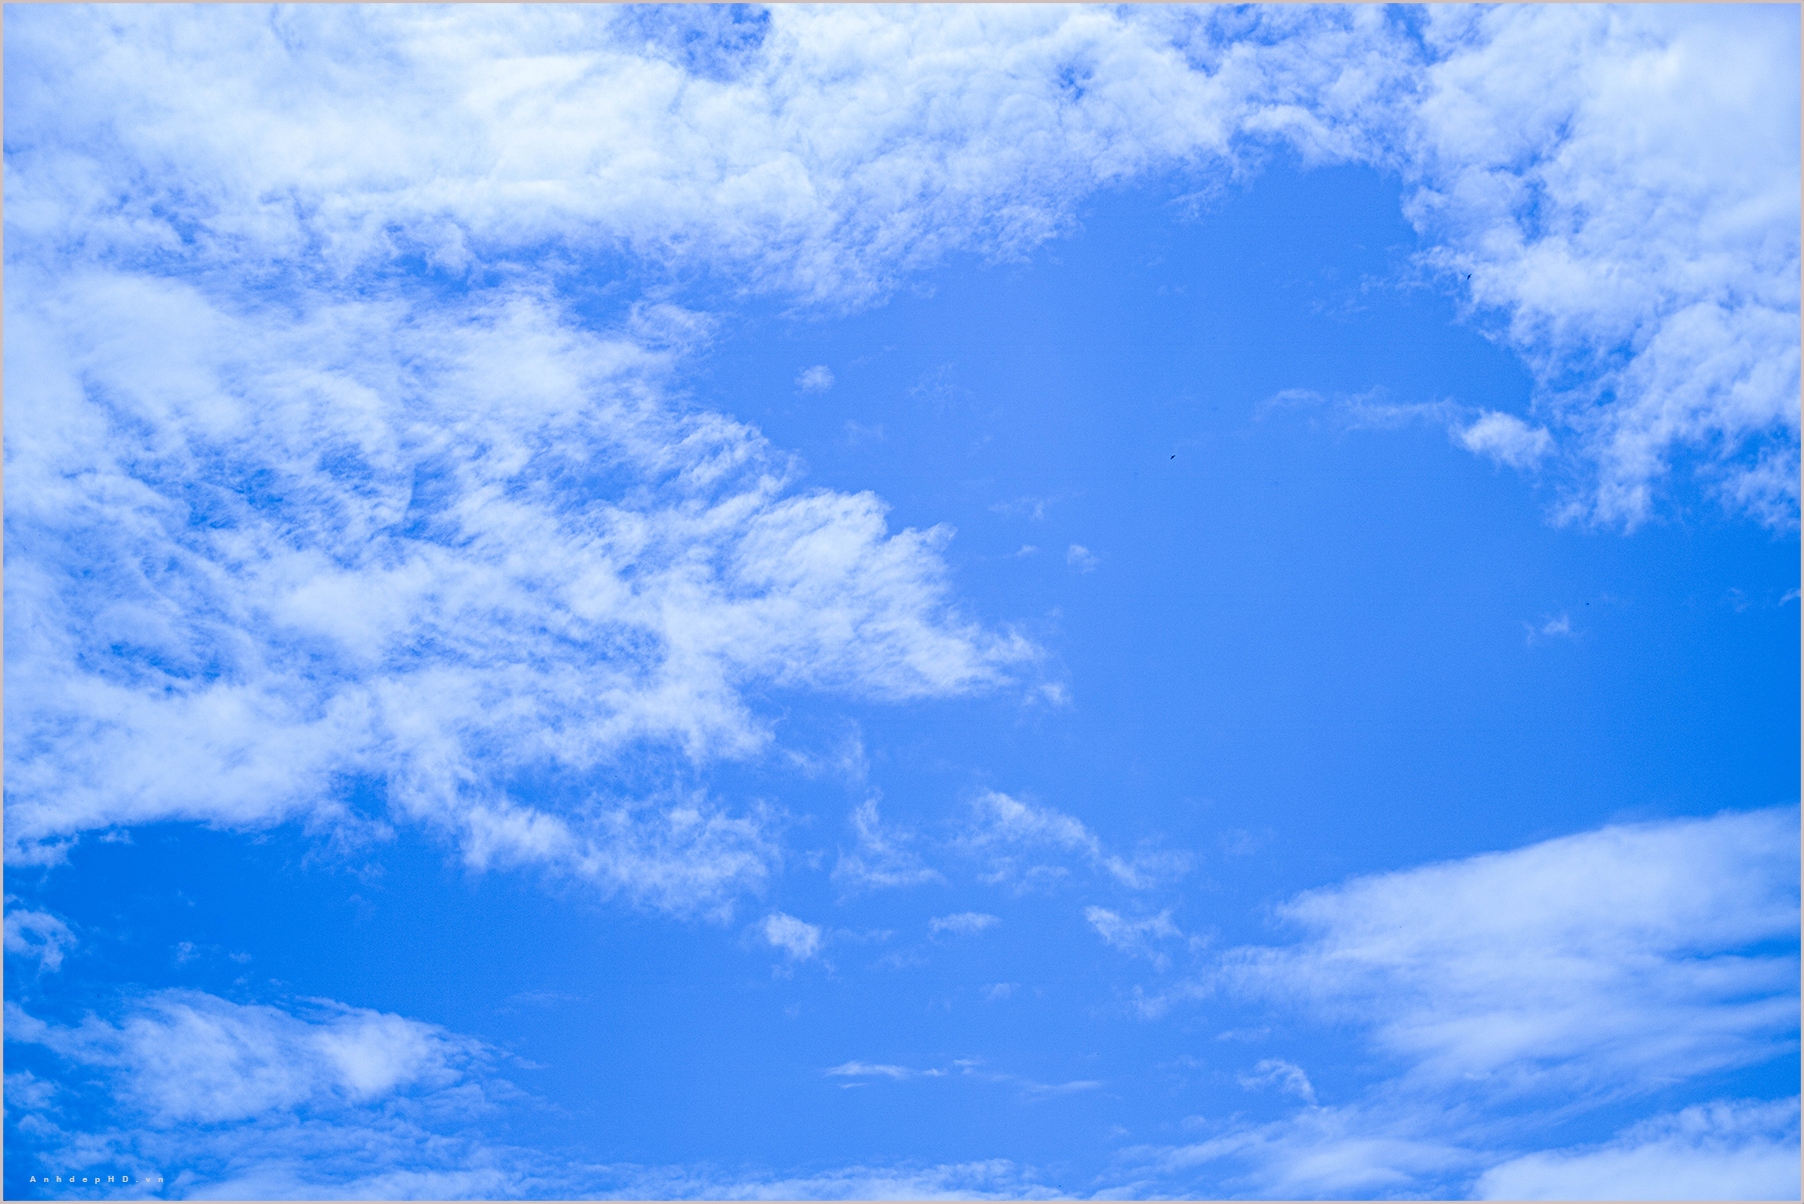 Hãy ngắm nhìn bức ảnh mây bay lơ lửng trên không trung để trải nghiệm cảm giác nhẹ nhàng, thoải mái và tạm quên đi những áp lực cuộc sống.